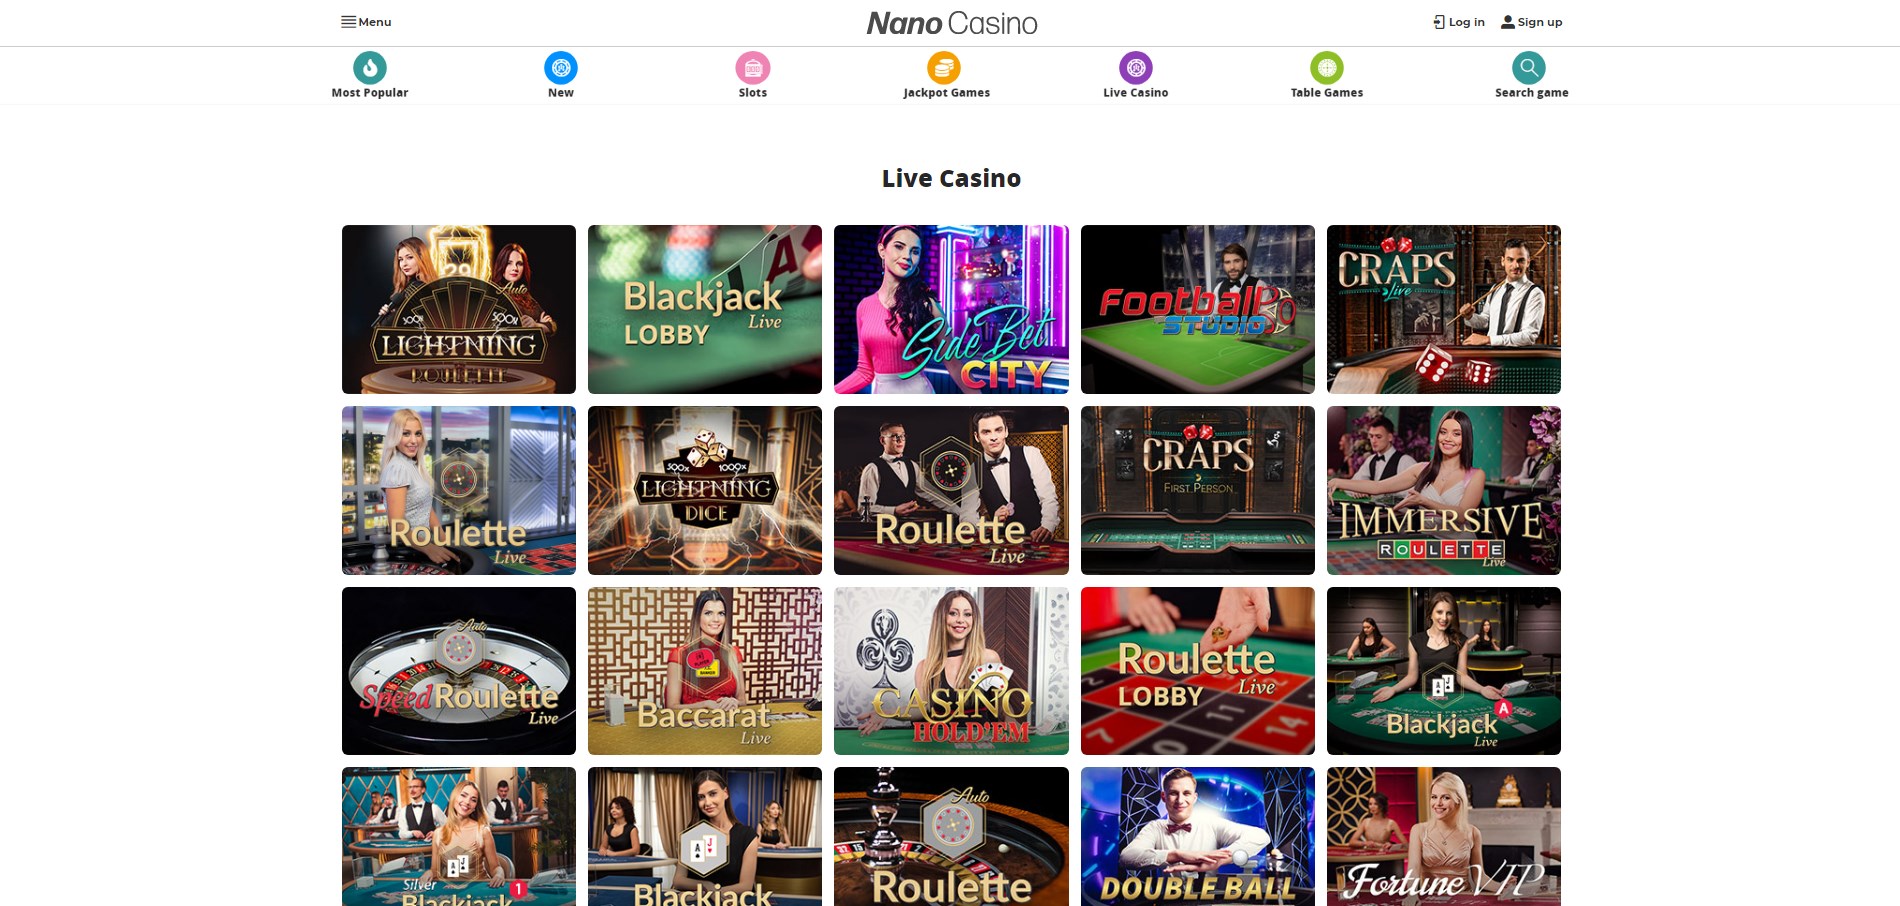 Nano Casino Live Dealer Games